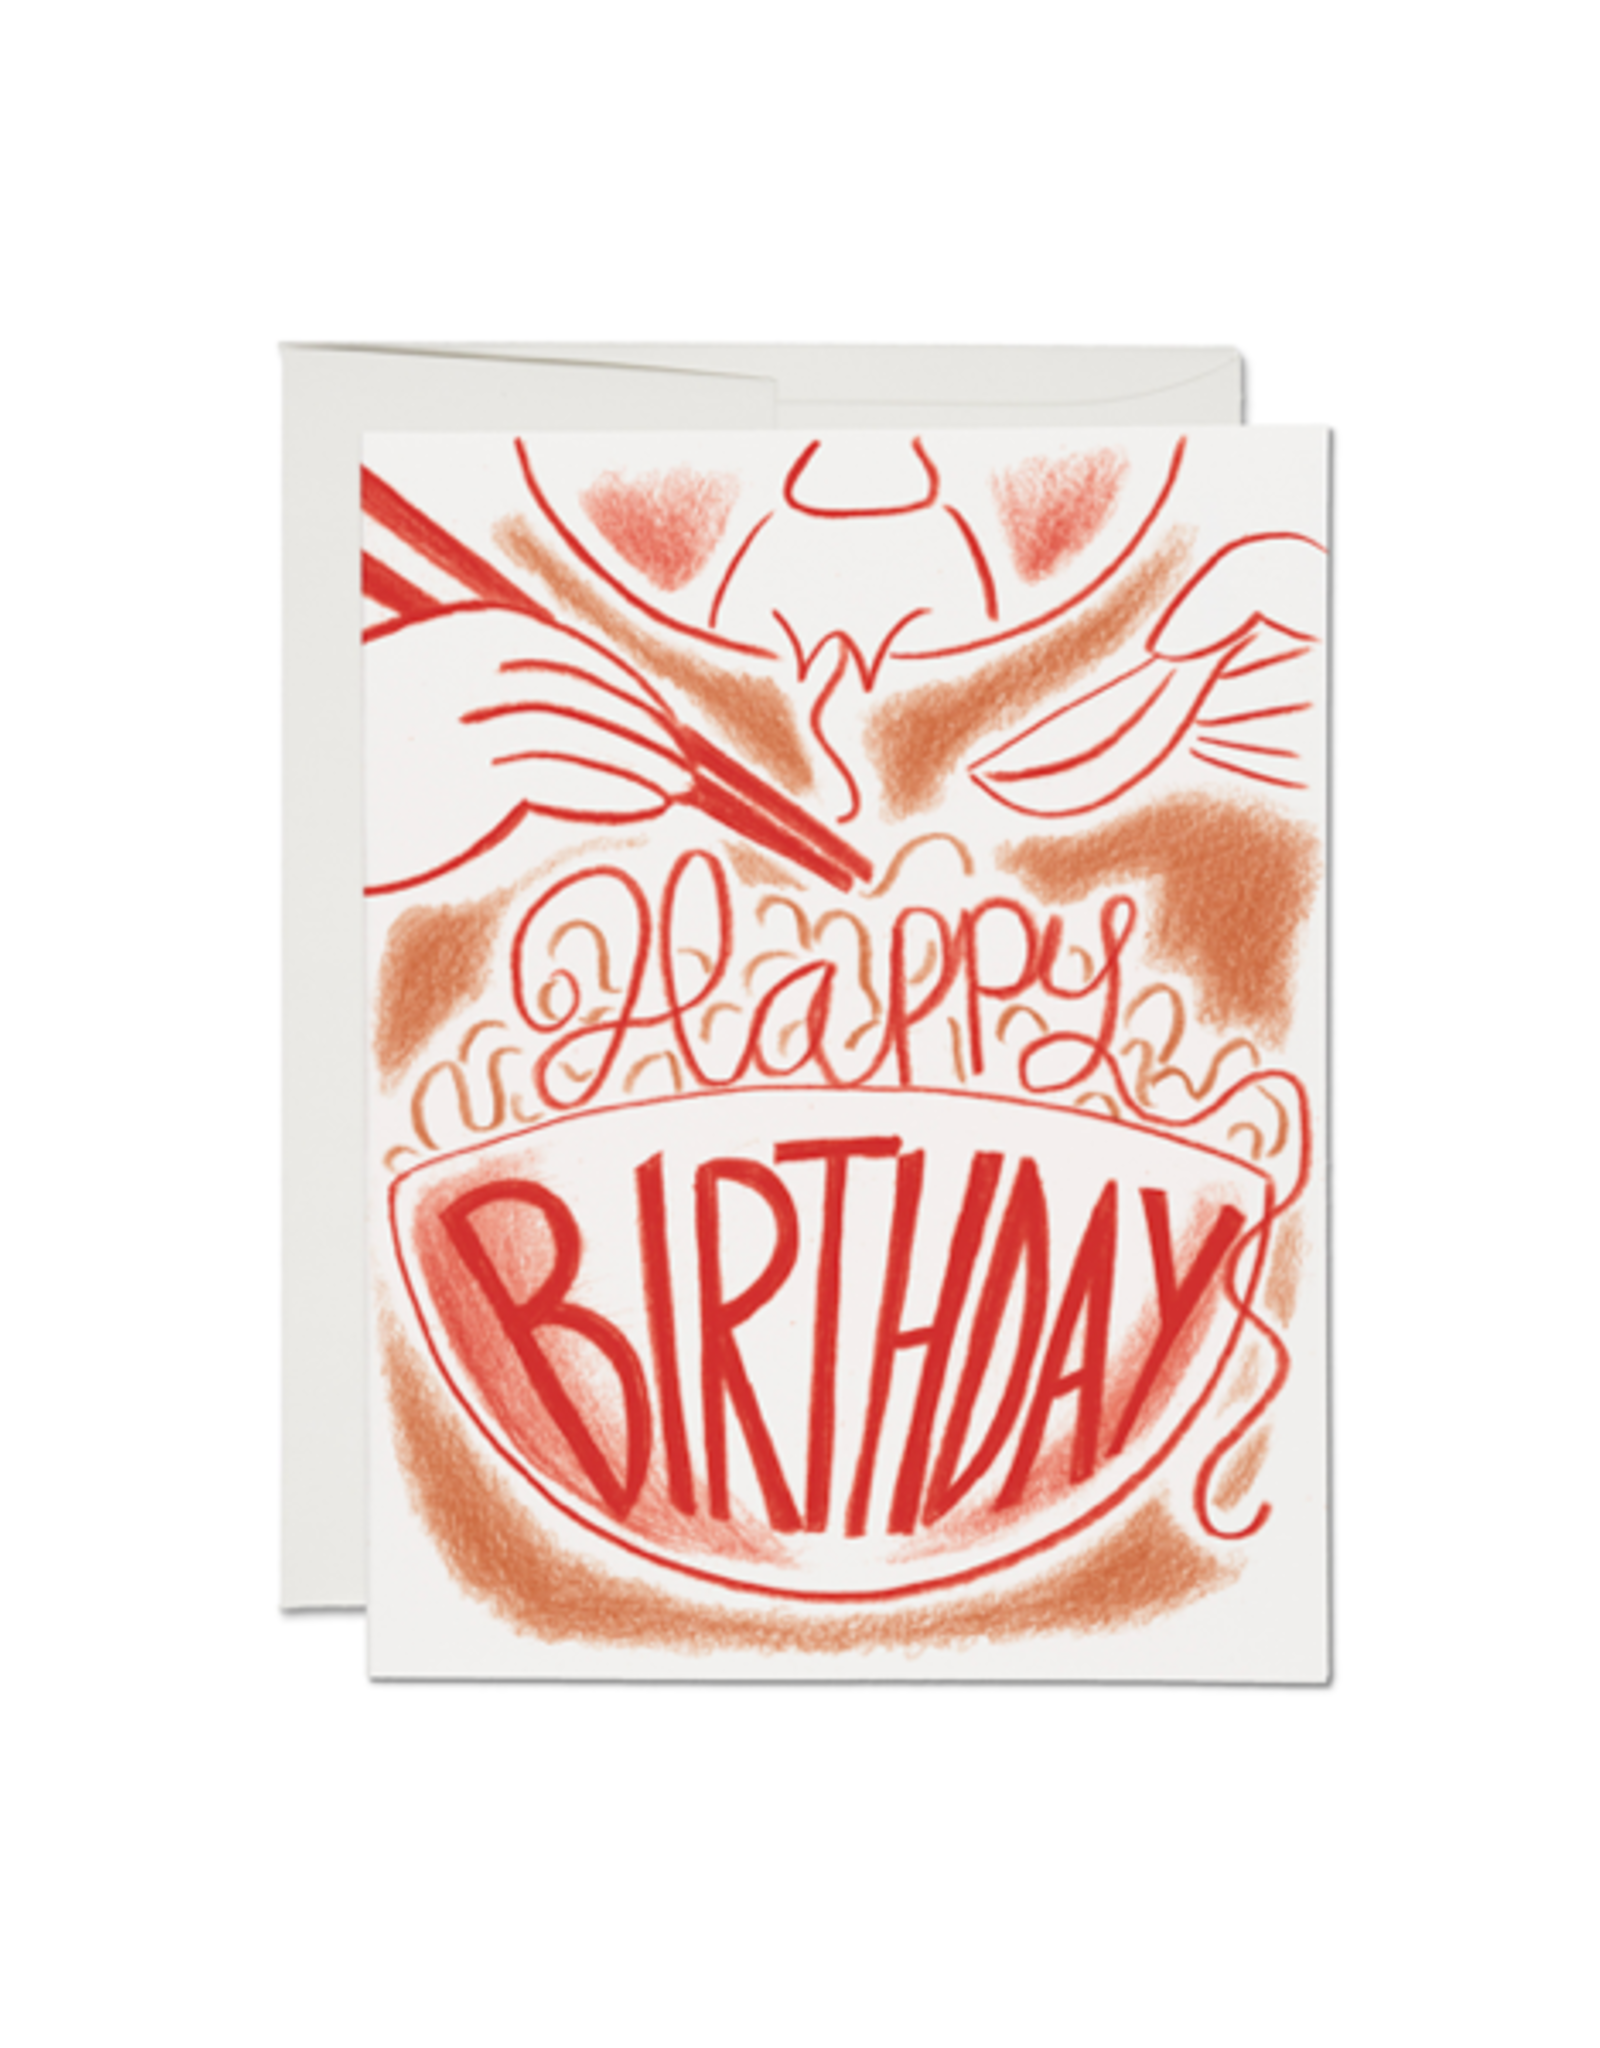 RAP - Card / Happy Birthday, 4.25 x 5.5"